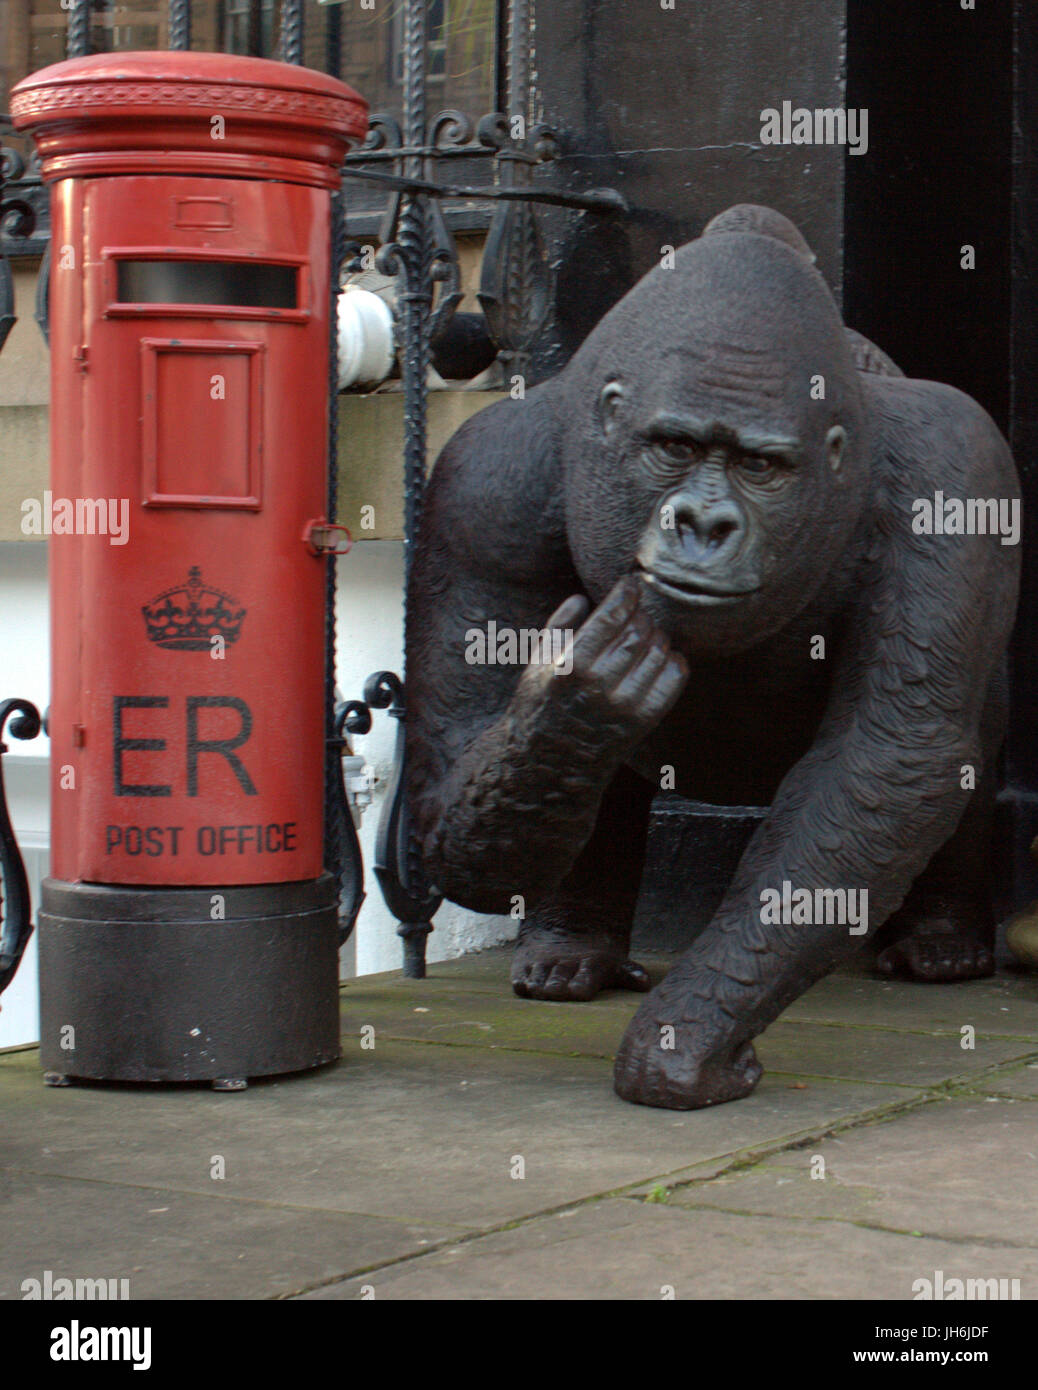 Bureau de poste de GPO postman pilier rouge fort et monkey ou gorilla concept tiré des observations sur le personnel et la direction de Royal Mail Banque D'Images